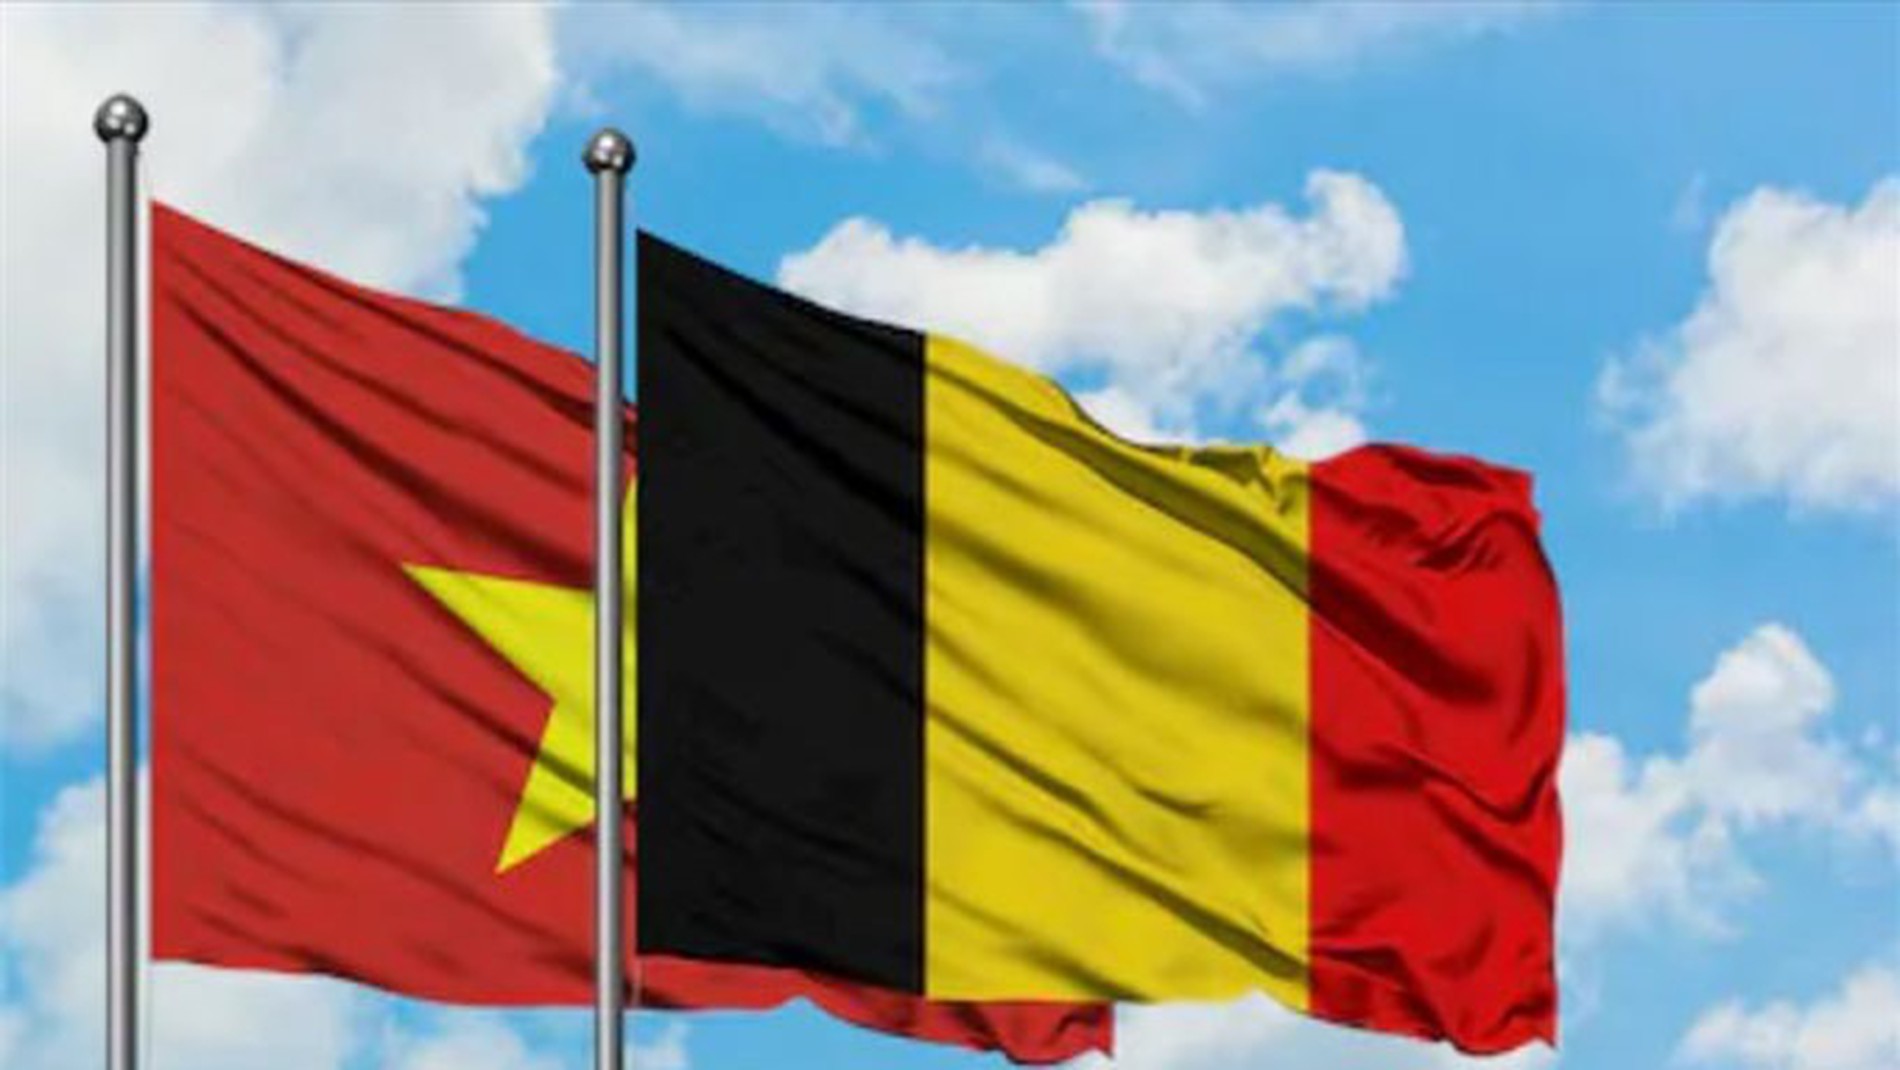 Quan hệ song phương Việt Nam - Bỉ: Quan hệ song phương giữa Việt Nam và Bỉ là một ví dụ của sự hiểu biết, tôn trọng và hợp tác. Hai bên đã có nhiều cuộc gặp gỡ và thảo luận để thúc đẩy mối quan hệ này. Đây là cơ hội tuyệt vời để khám phá sự đa dạng của văn hóa và lịch sử của cả hai quốc gia.